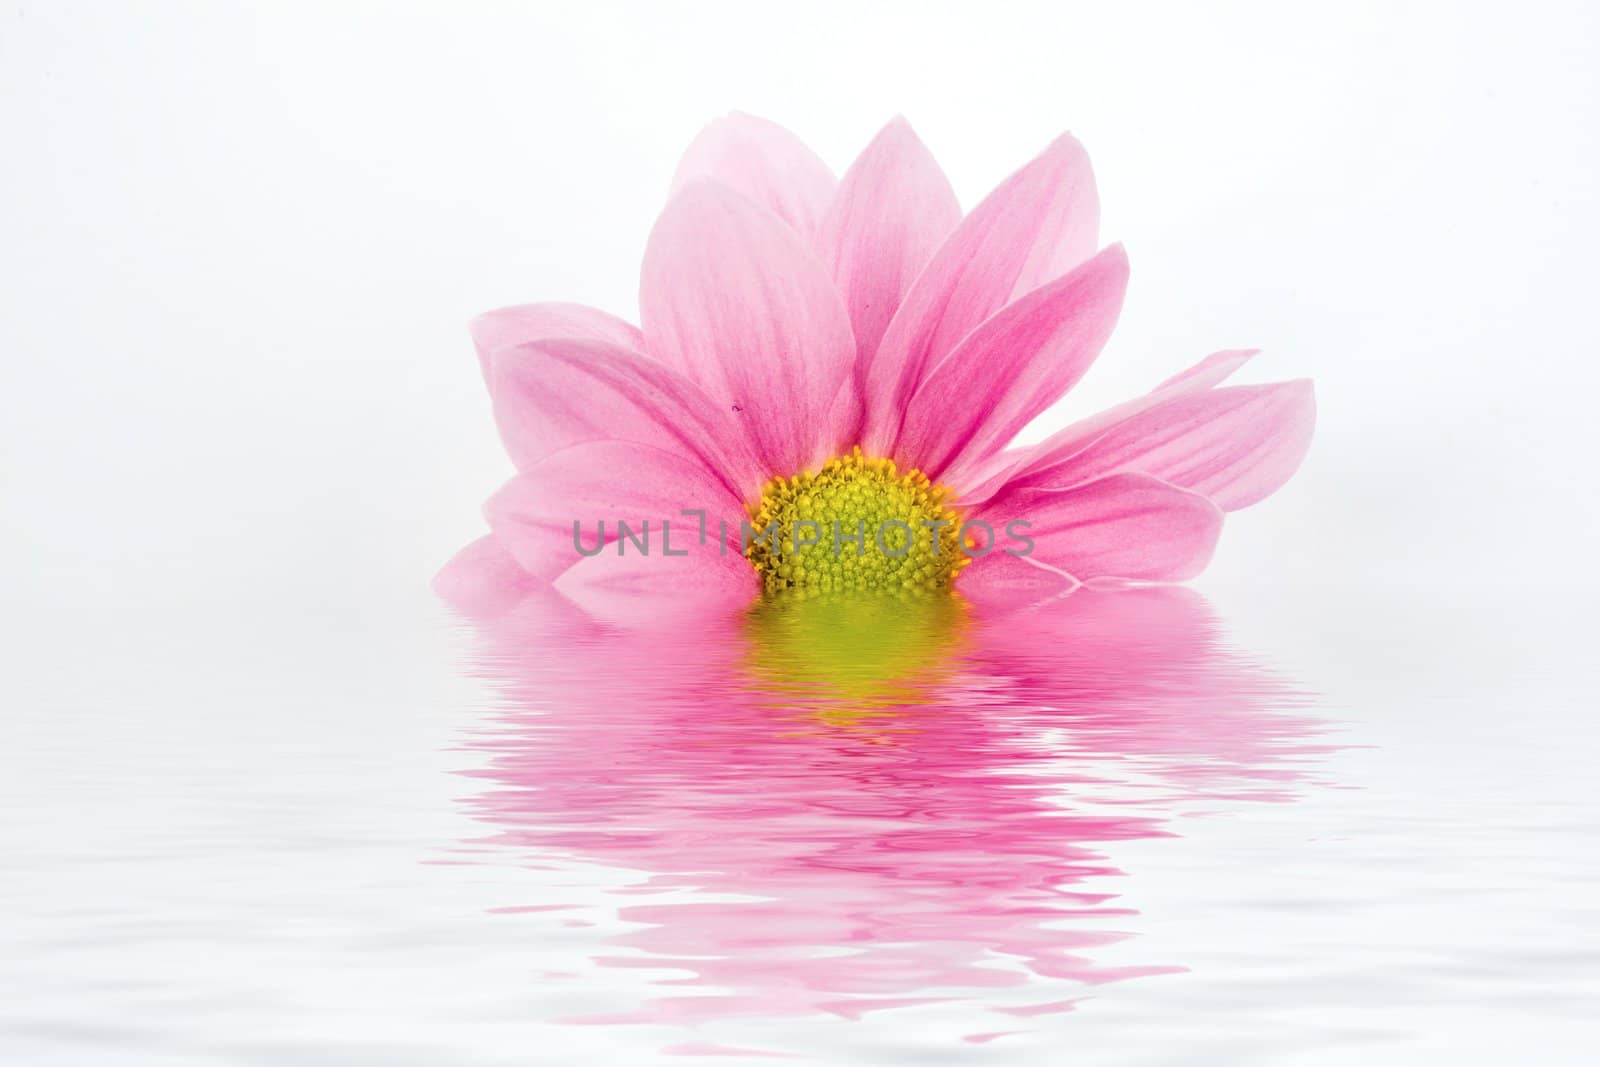 Flower in water by velkol